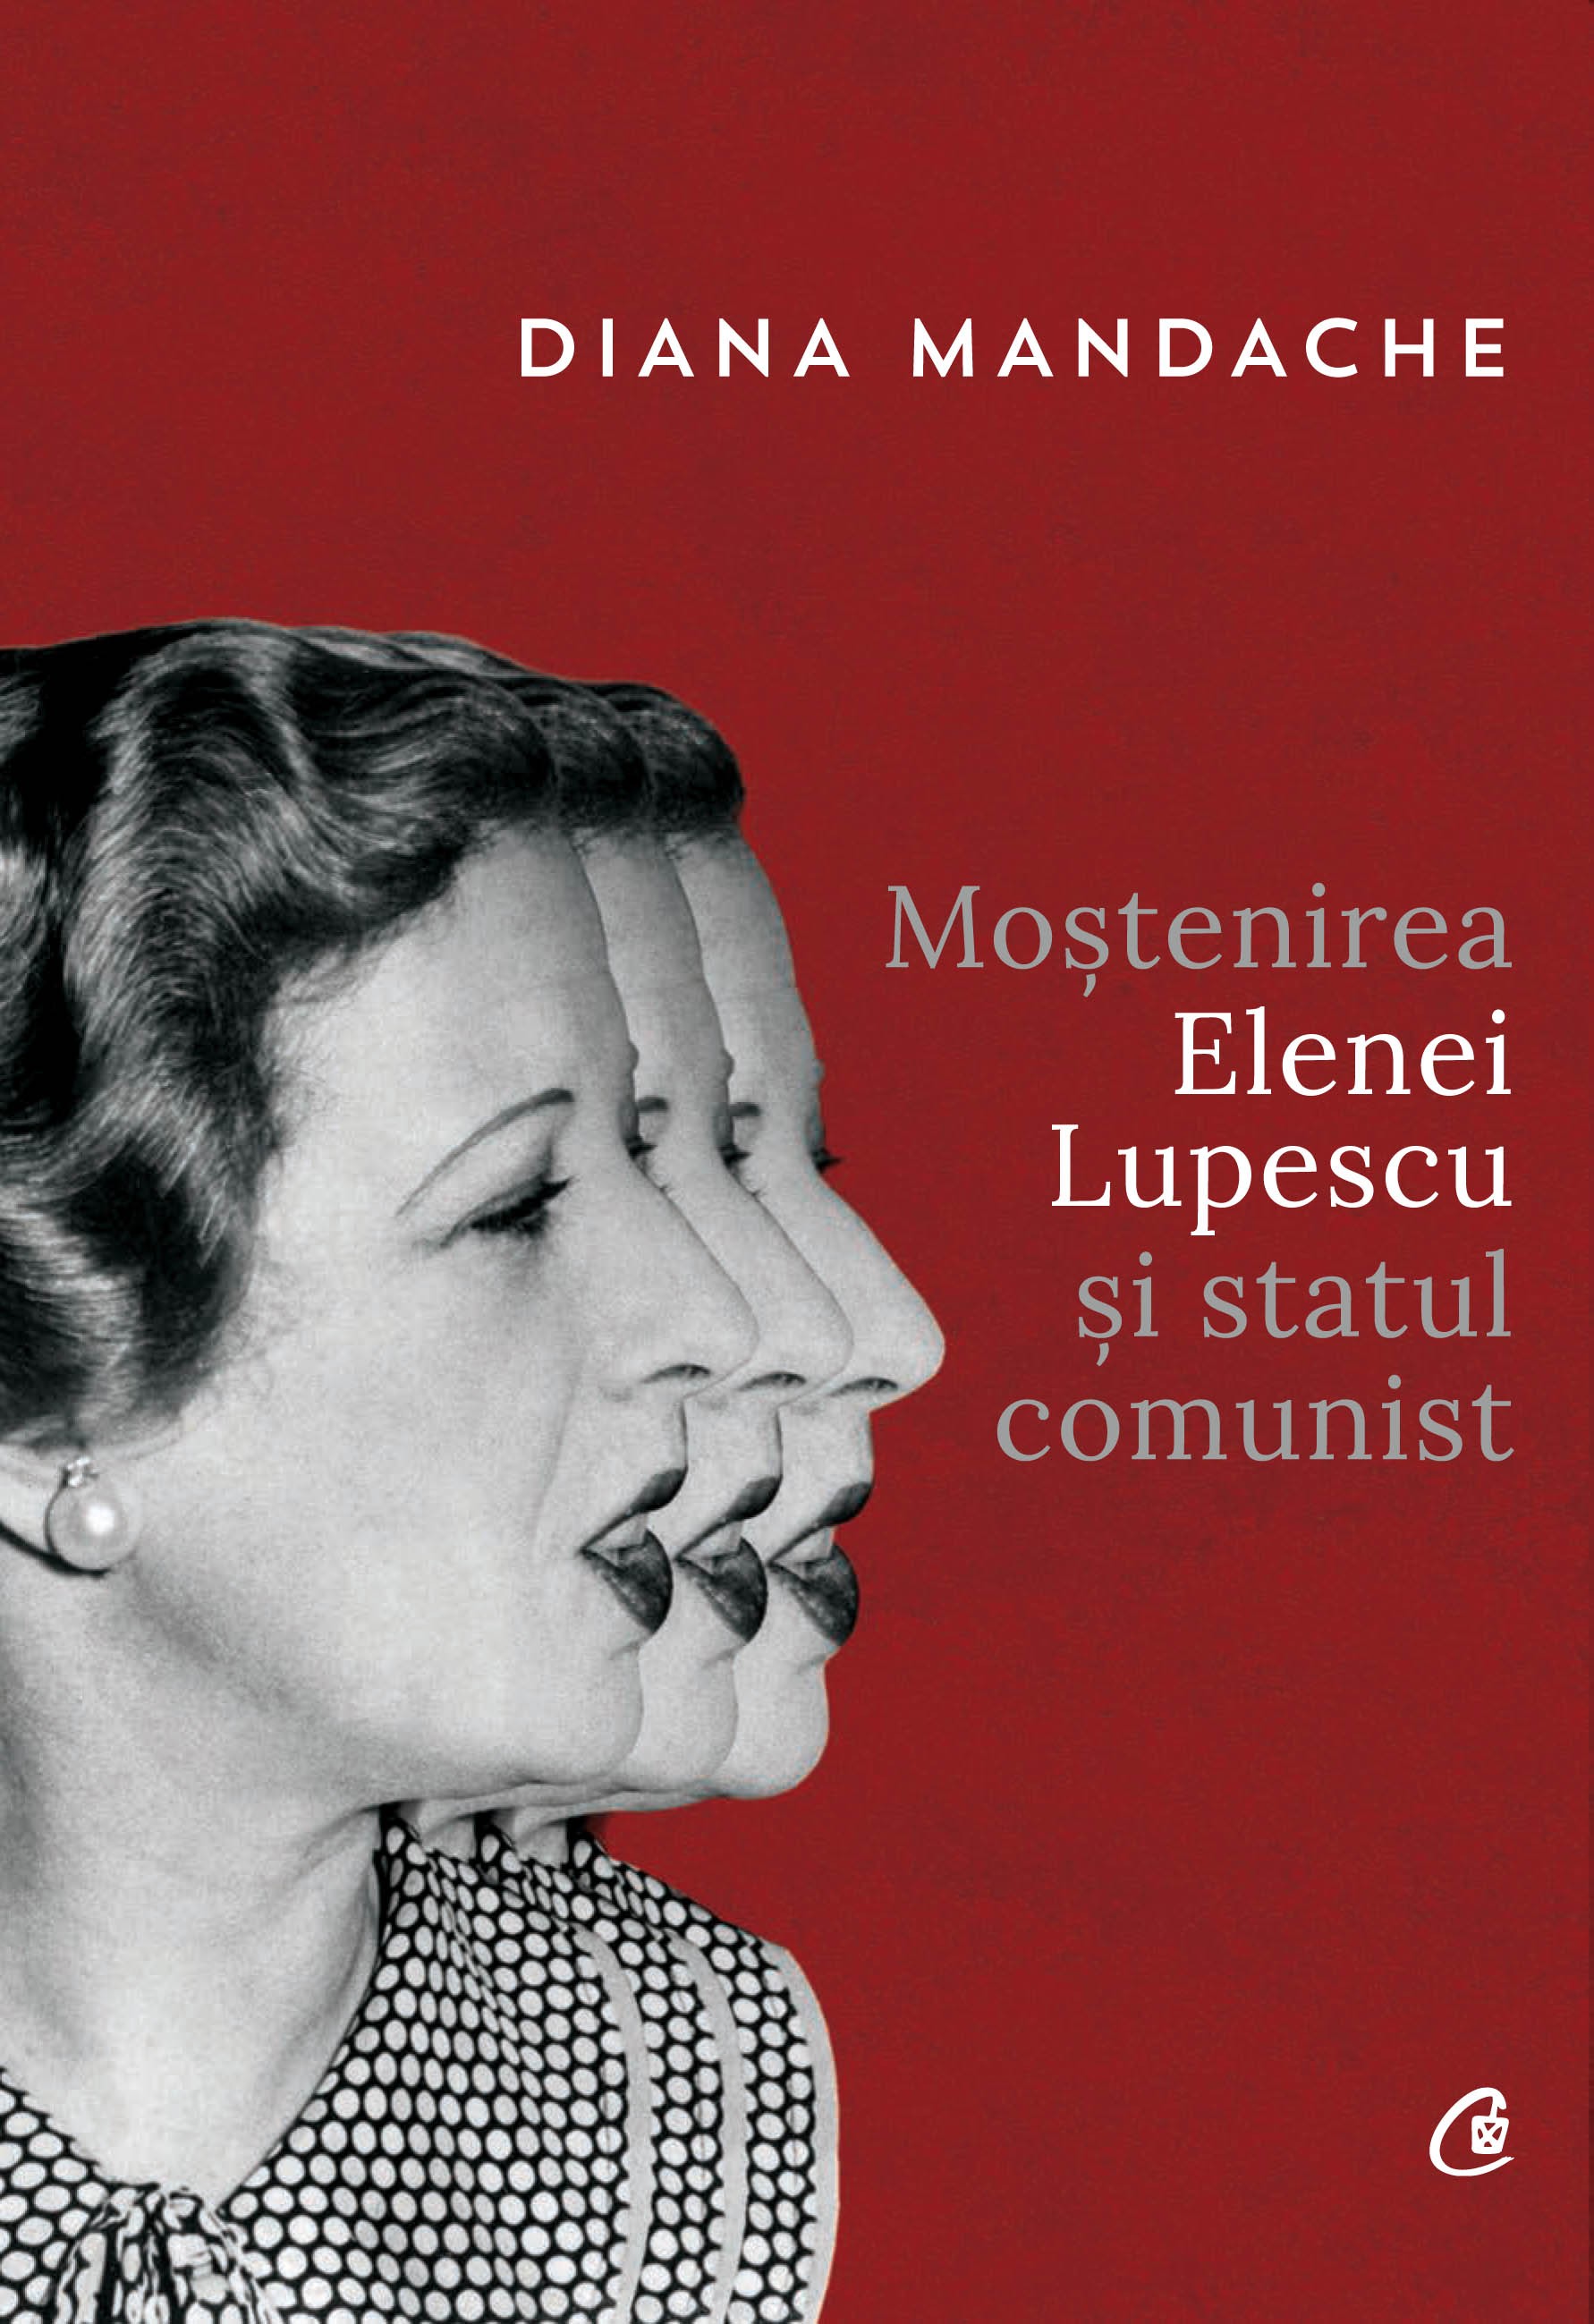 Mostenirea Elenei Lupescu si Statul Comunist | Diana Mandache carte